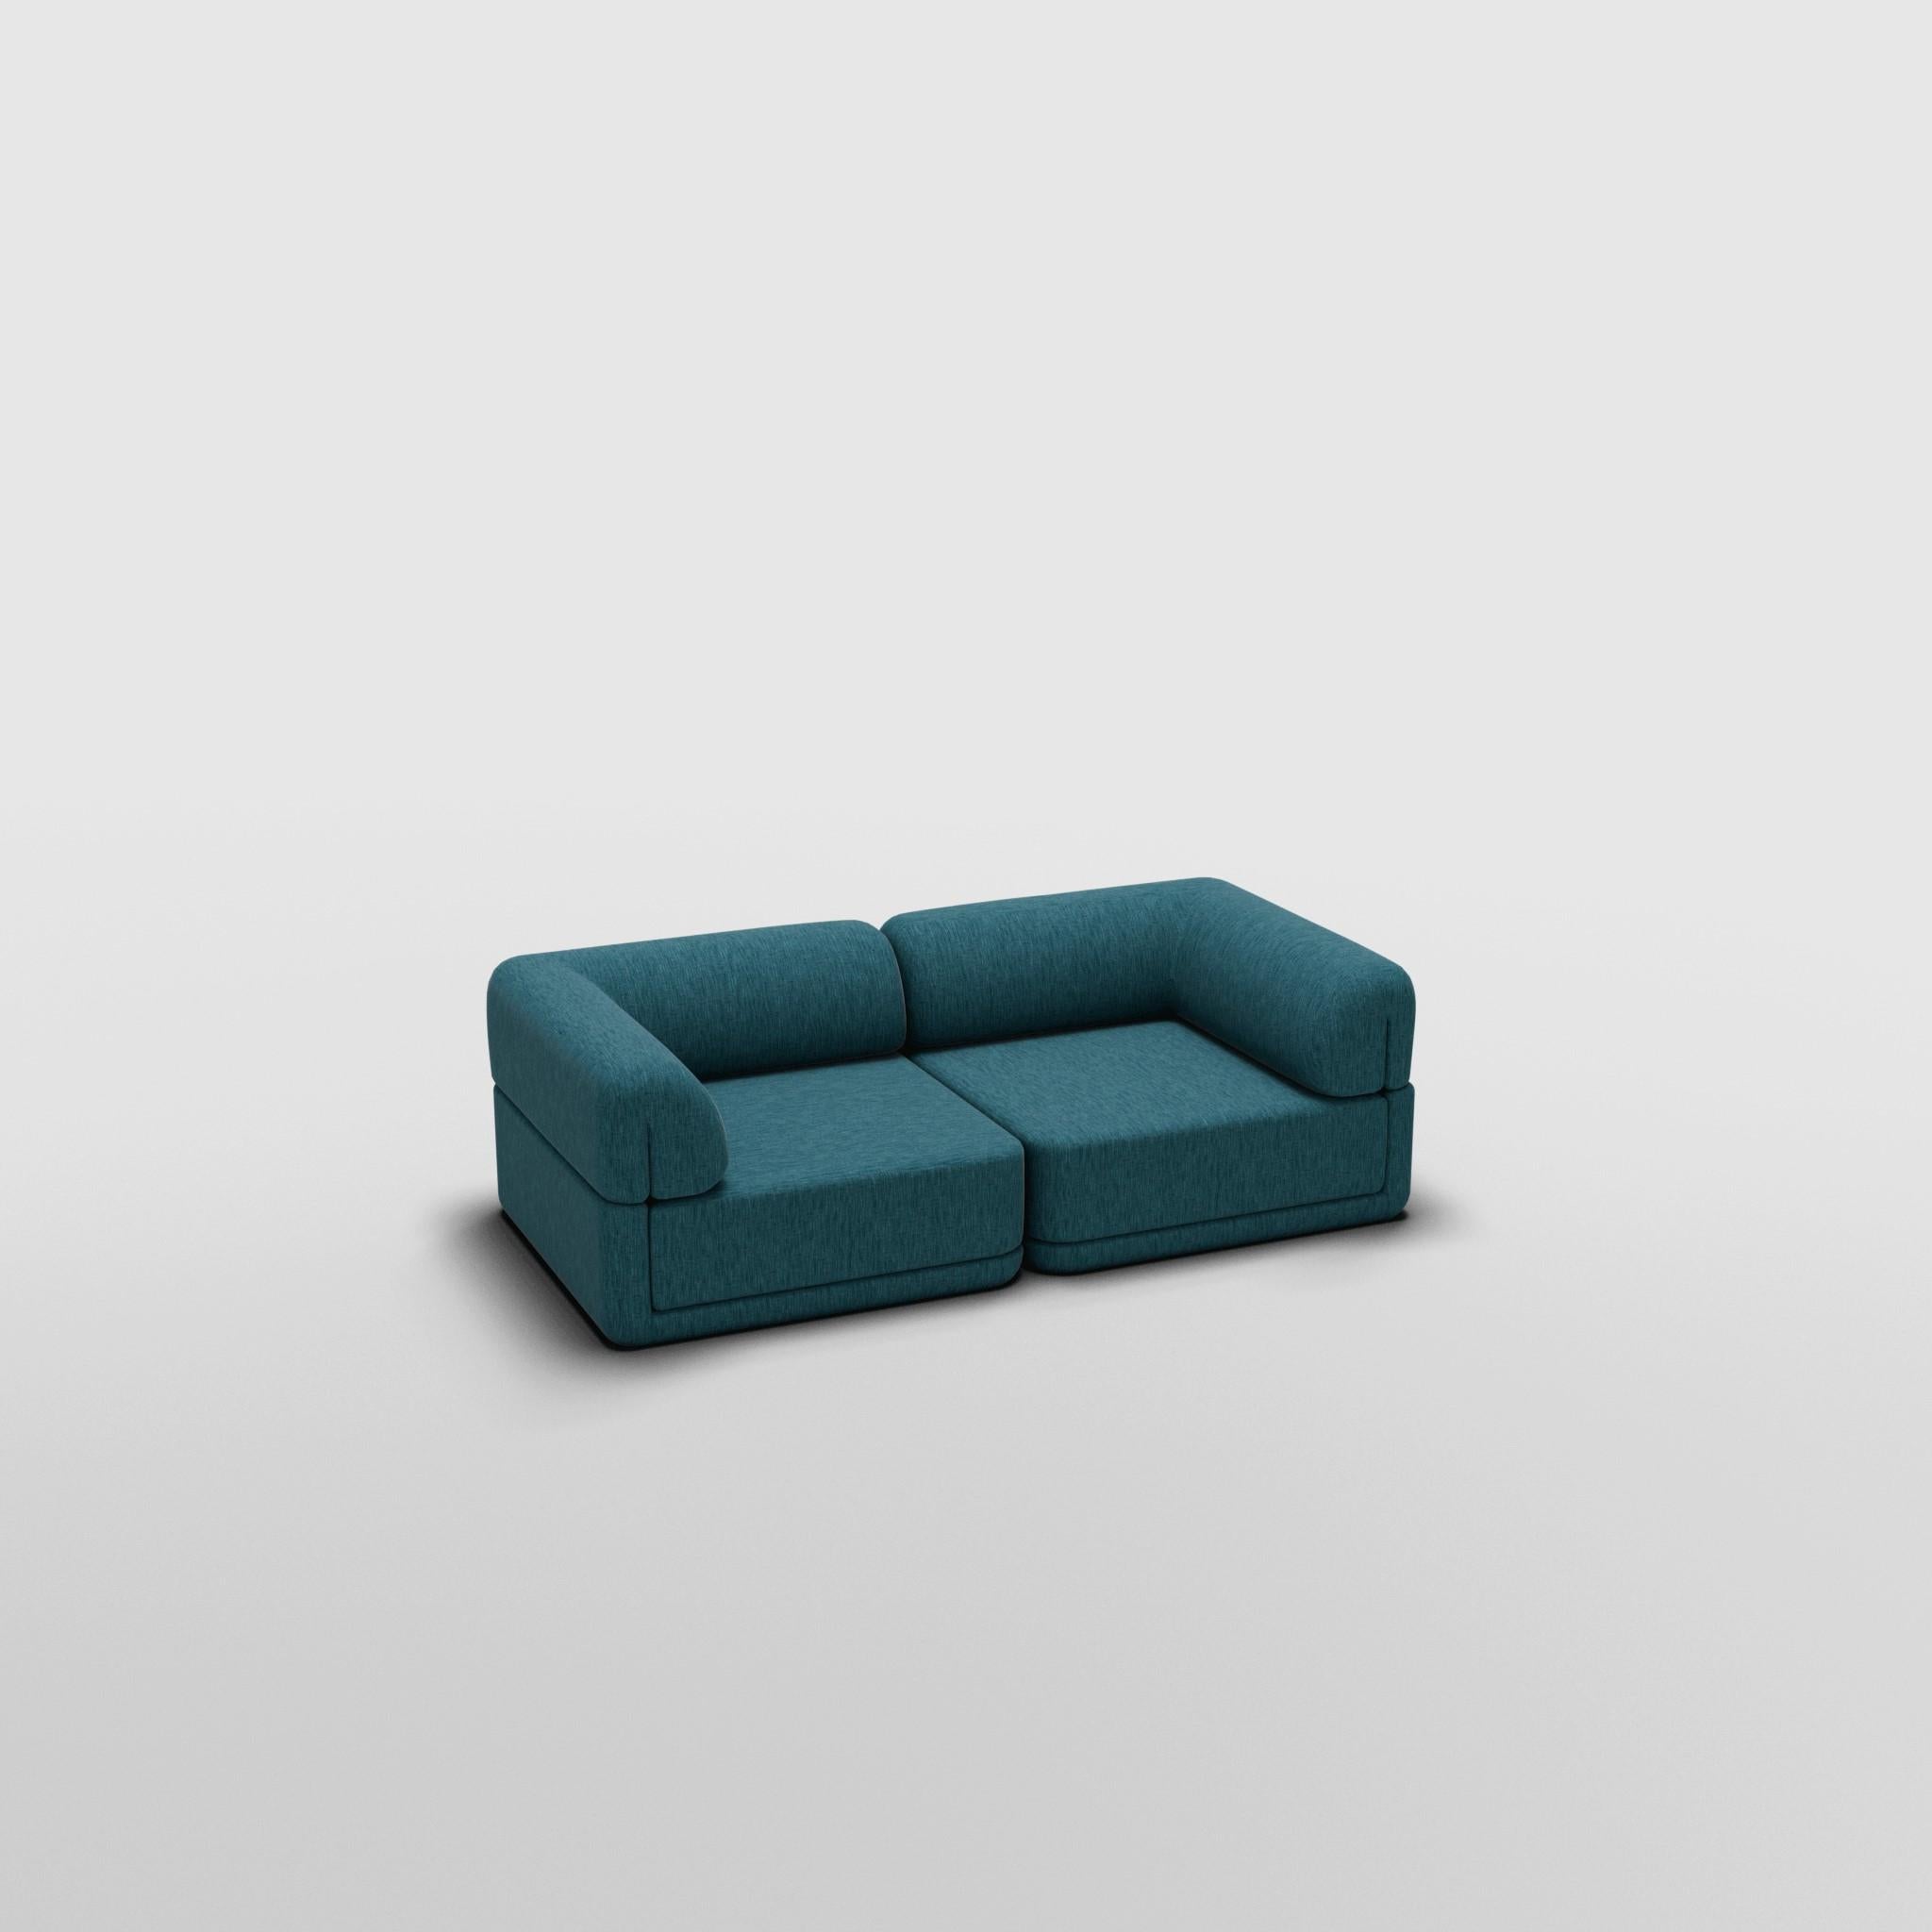 Corner Lounge Set - Inspiriert von italienischen Luxusmöbeln der 70er Jahre

Entdecken Sie das Cube Sofa, wo Kunst auf Anpassungsfähigkeit trifft. Das skulpturale Design und der individuell anpassbare Komfort schaffen unendliche Möglichkeiten für